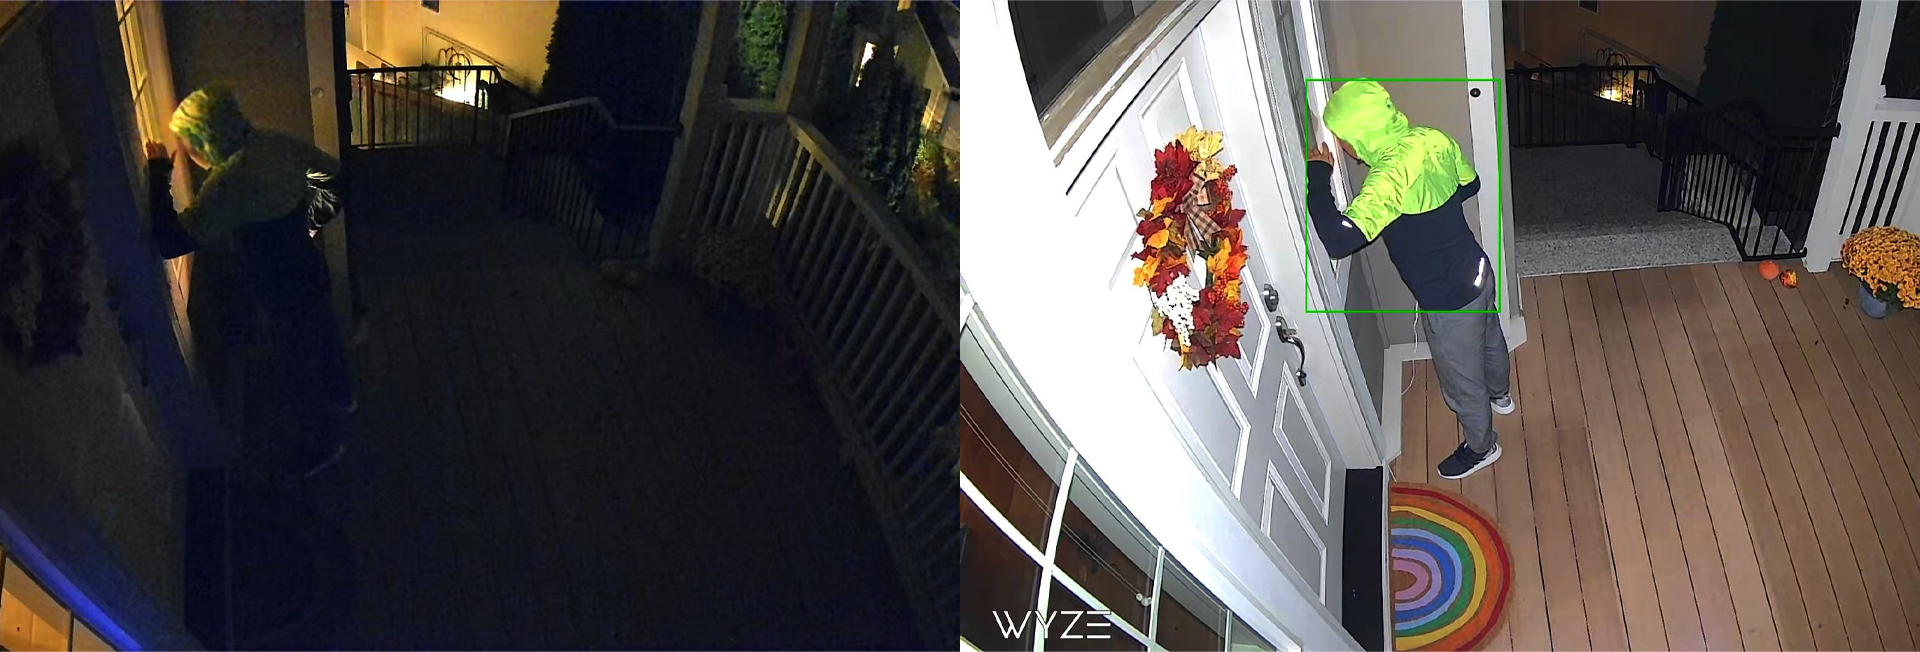 Hình ảnh một người đàn ông gõ cửa vào ban đêm với Wyze Cam Spotlight được bật và tắt.